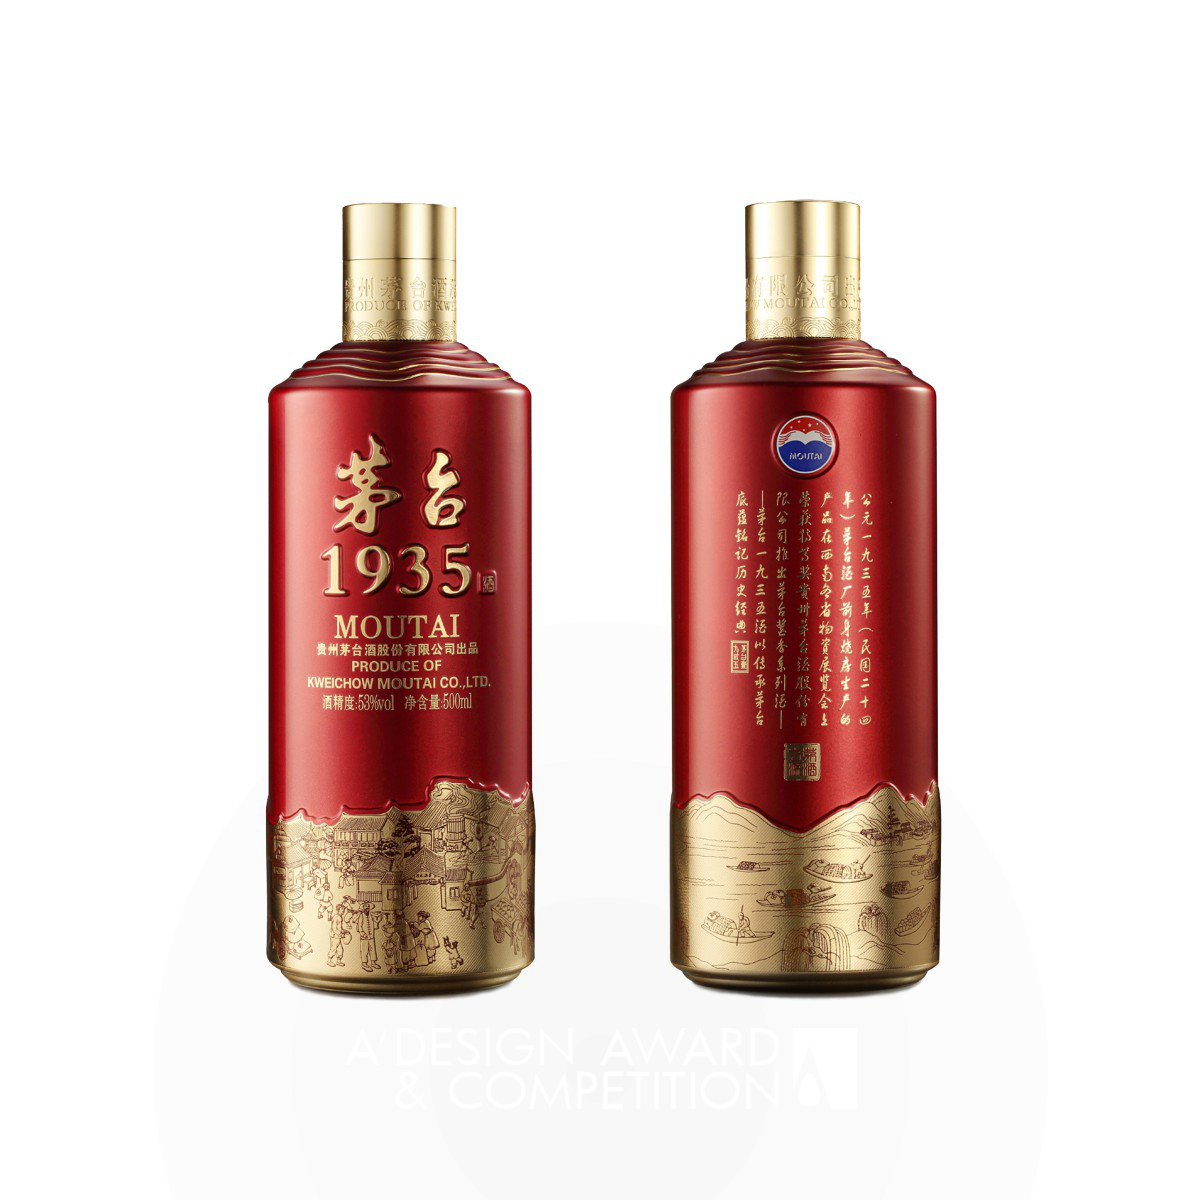 Moutai 1935 Liquor Packaging by Chengdu Wanjiazu Technology Co., Ltd